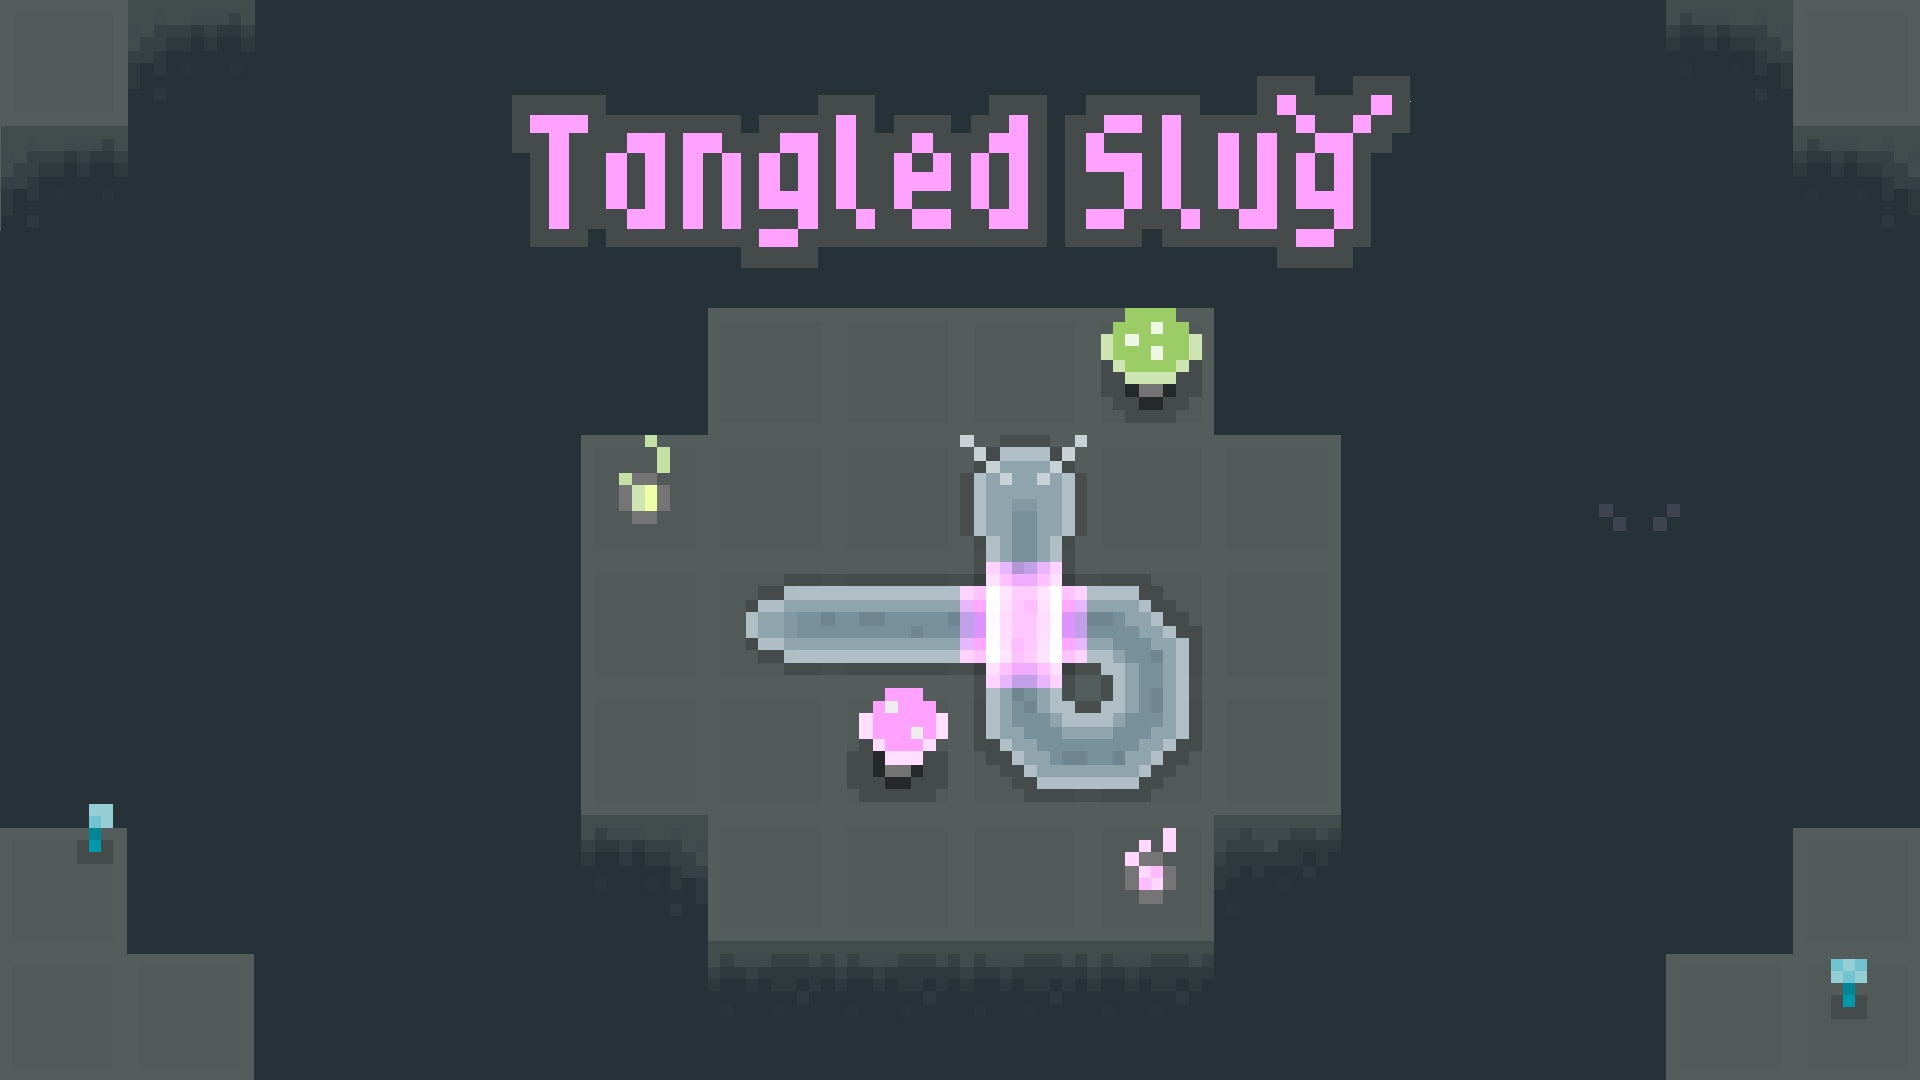 Tangled Slug